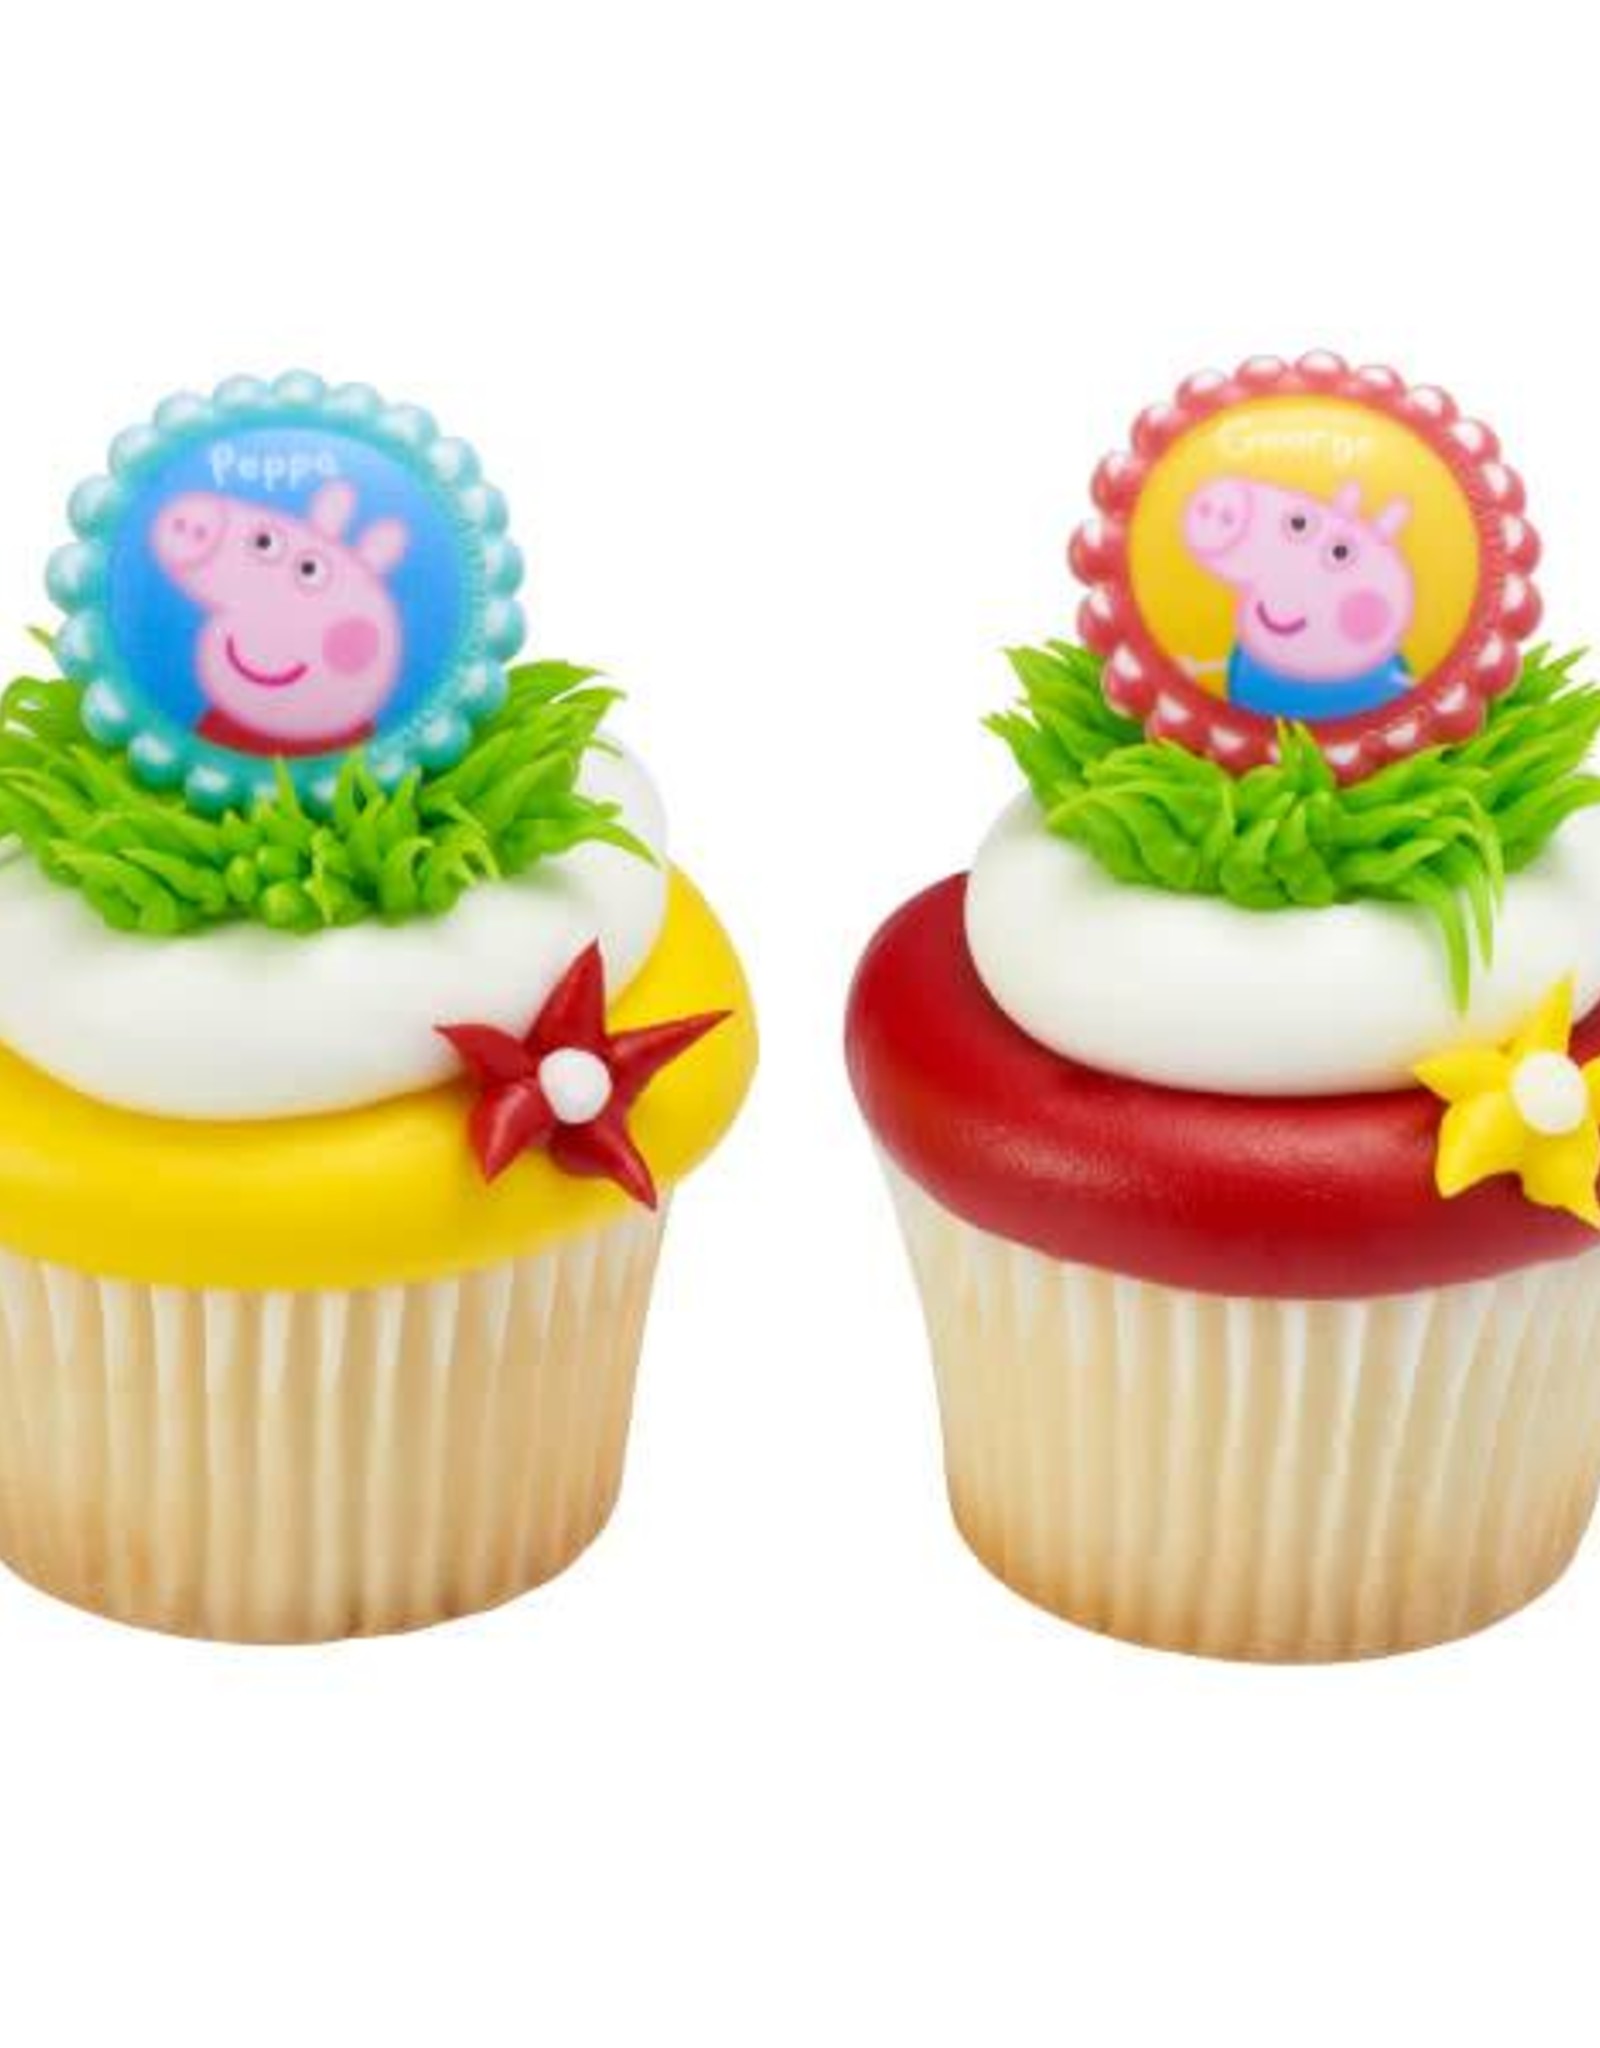 Peppa Pig Cupcake Rings (12 per pkg)